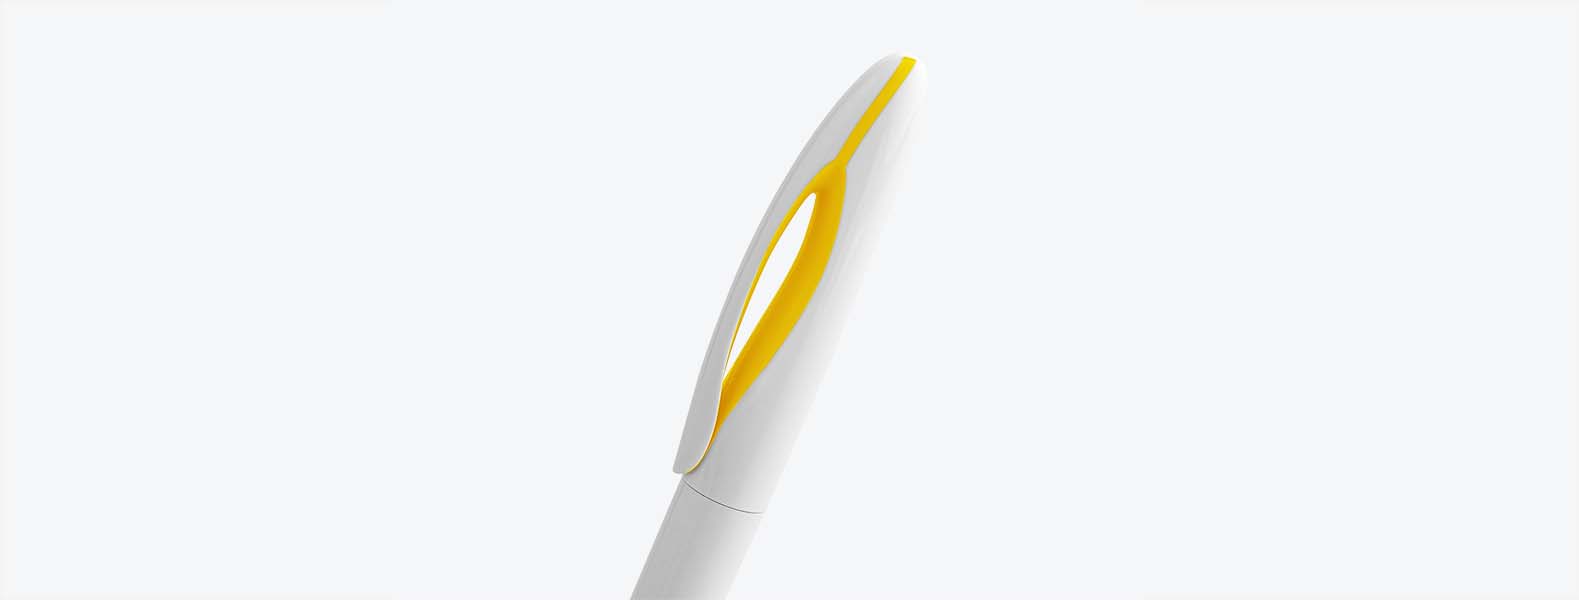 Caneta esferográfica em Plástico branca/amarela. Conta com carga esferográfica azul acionada com um giro na extremidade da caneta.